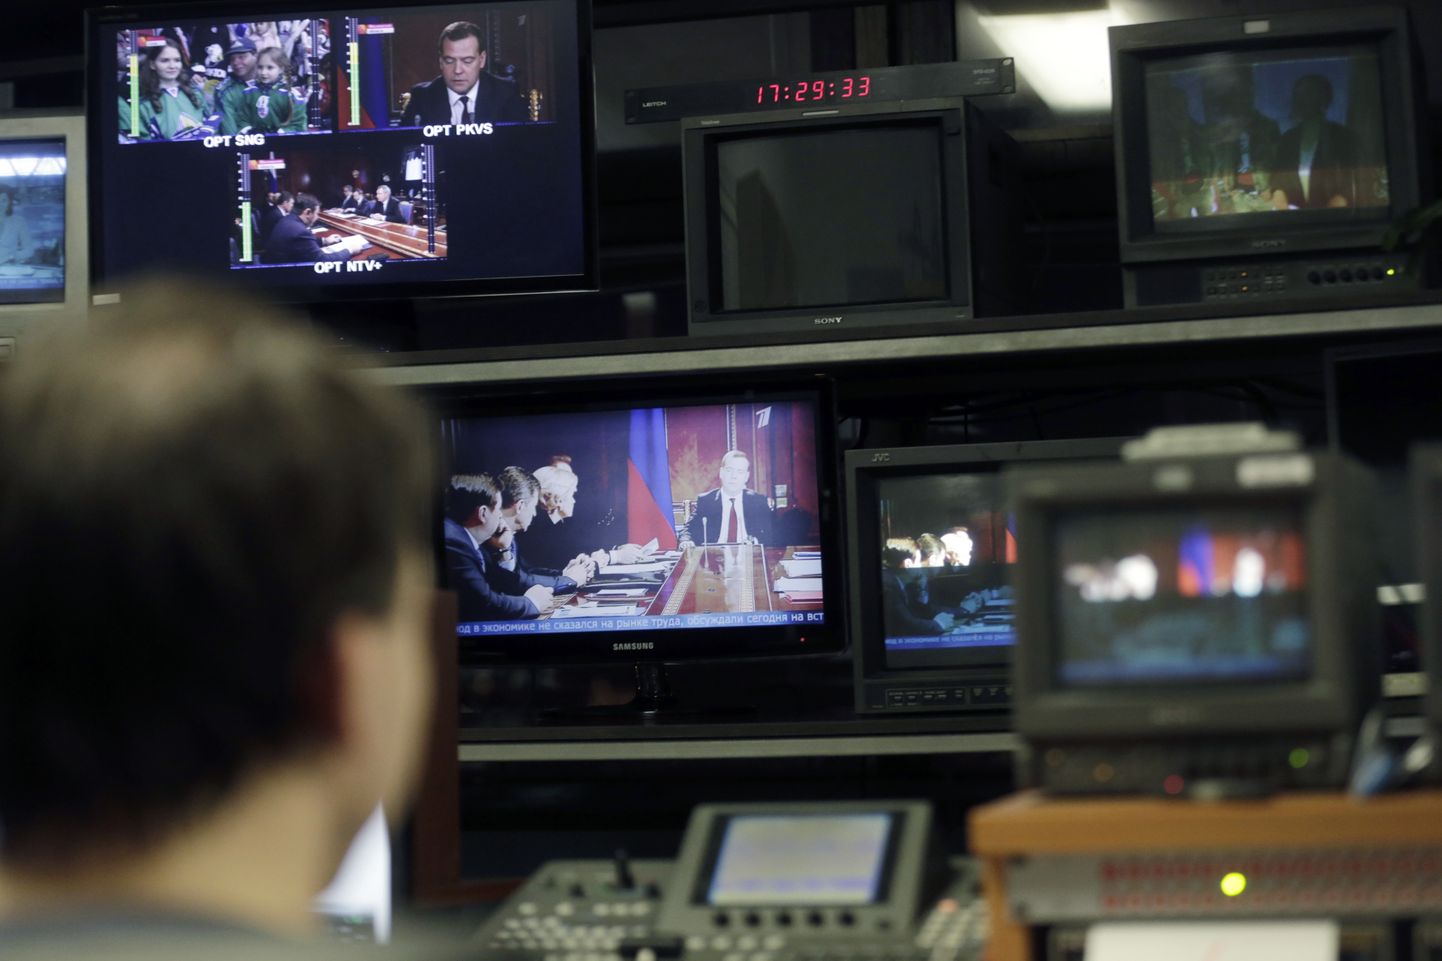 Baltijas Pirmā kanāla (PBK) tehniķis uzrauga Krievijas TV satura pārraidi Rīgā 2015. gada 26. janvārī